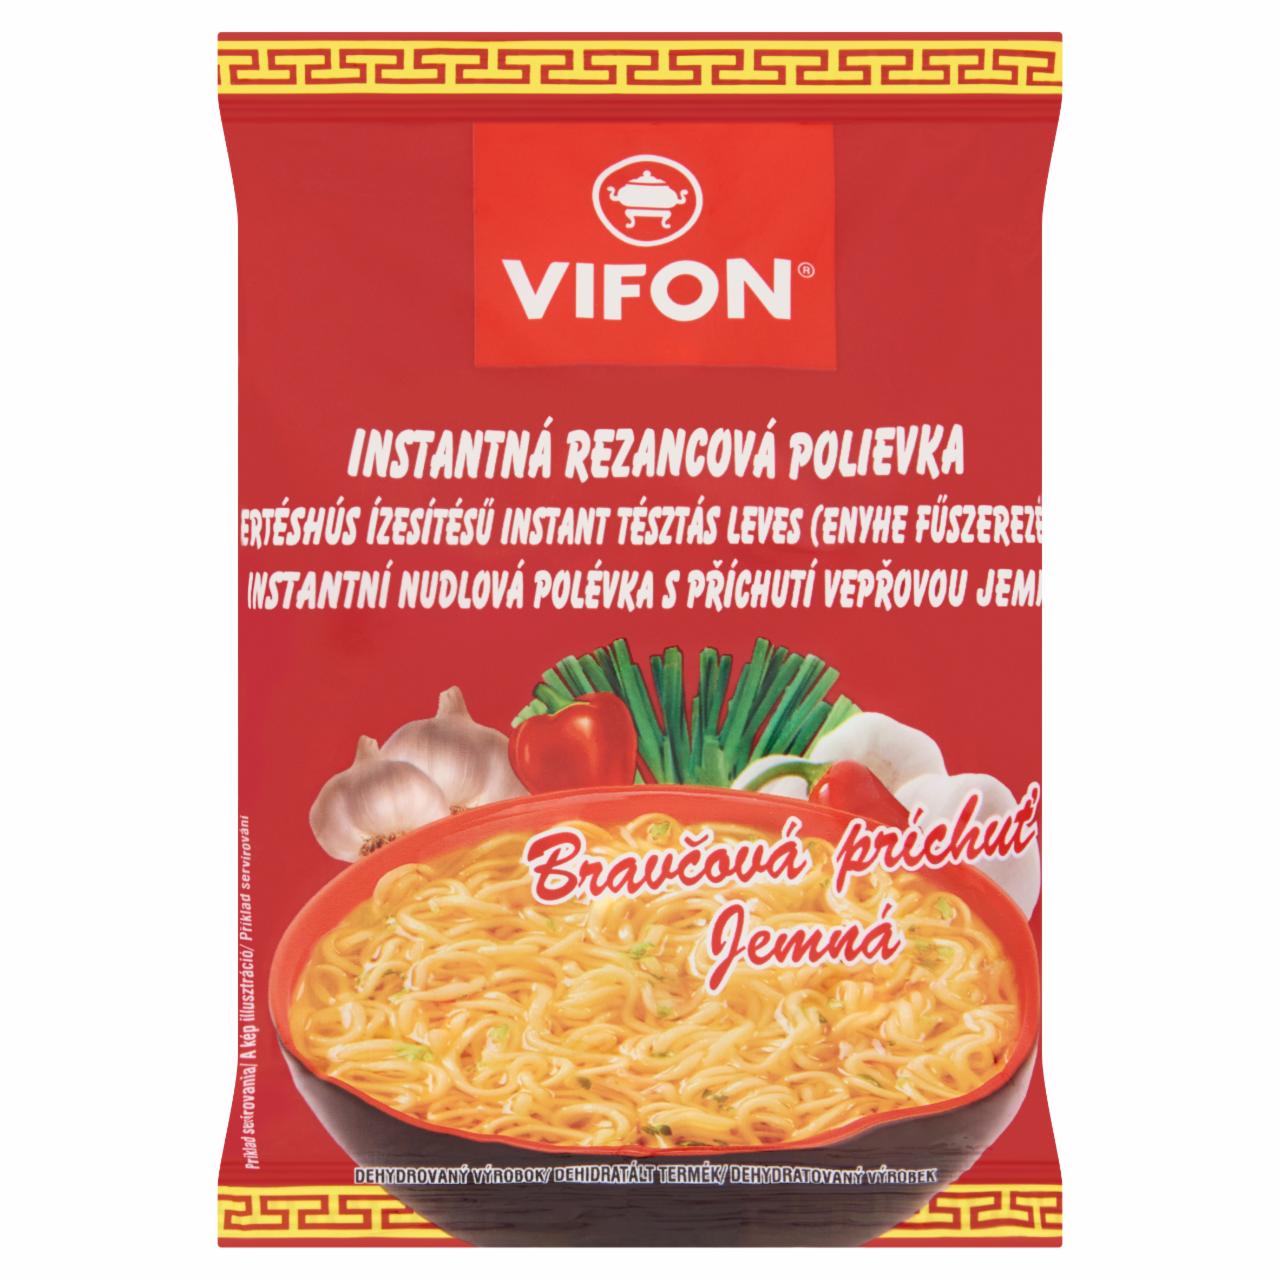 Képek - Enyhe fűszerezésű, sertéshús ízesítésű instant tésztás leves Vifon